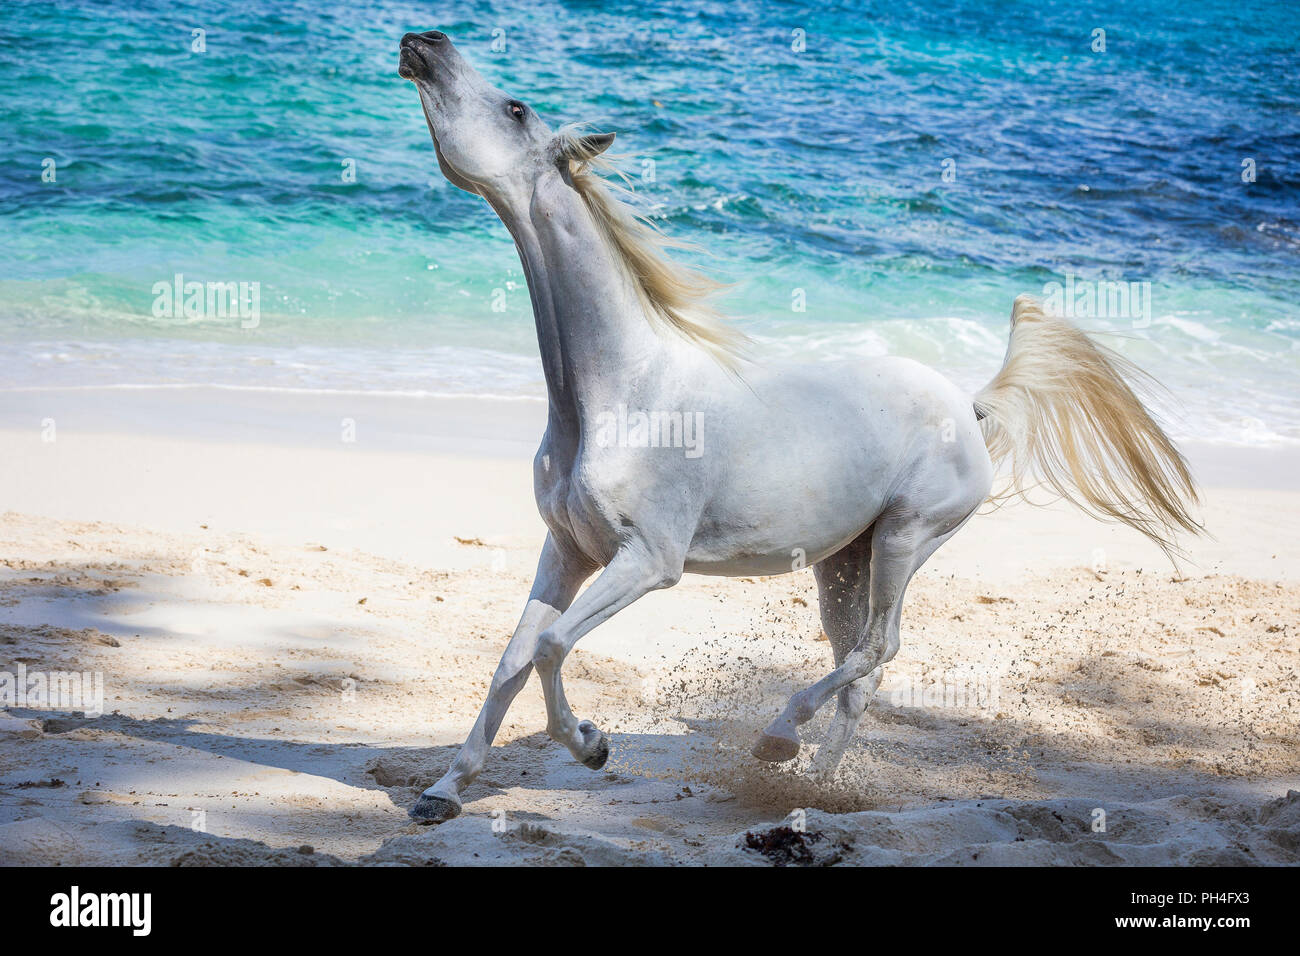 Arabian Horse. Grigio mare su una spiaggia tropicale, agitare continuamente con la testa. Seicelle Foto Stock